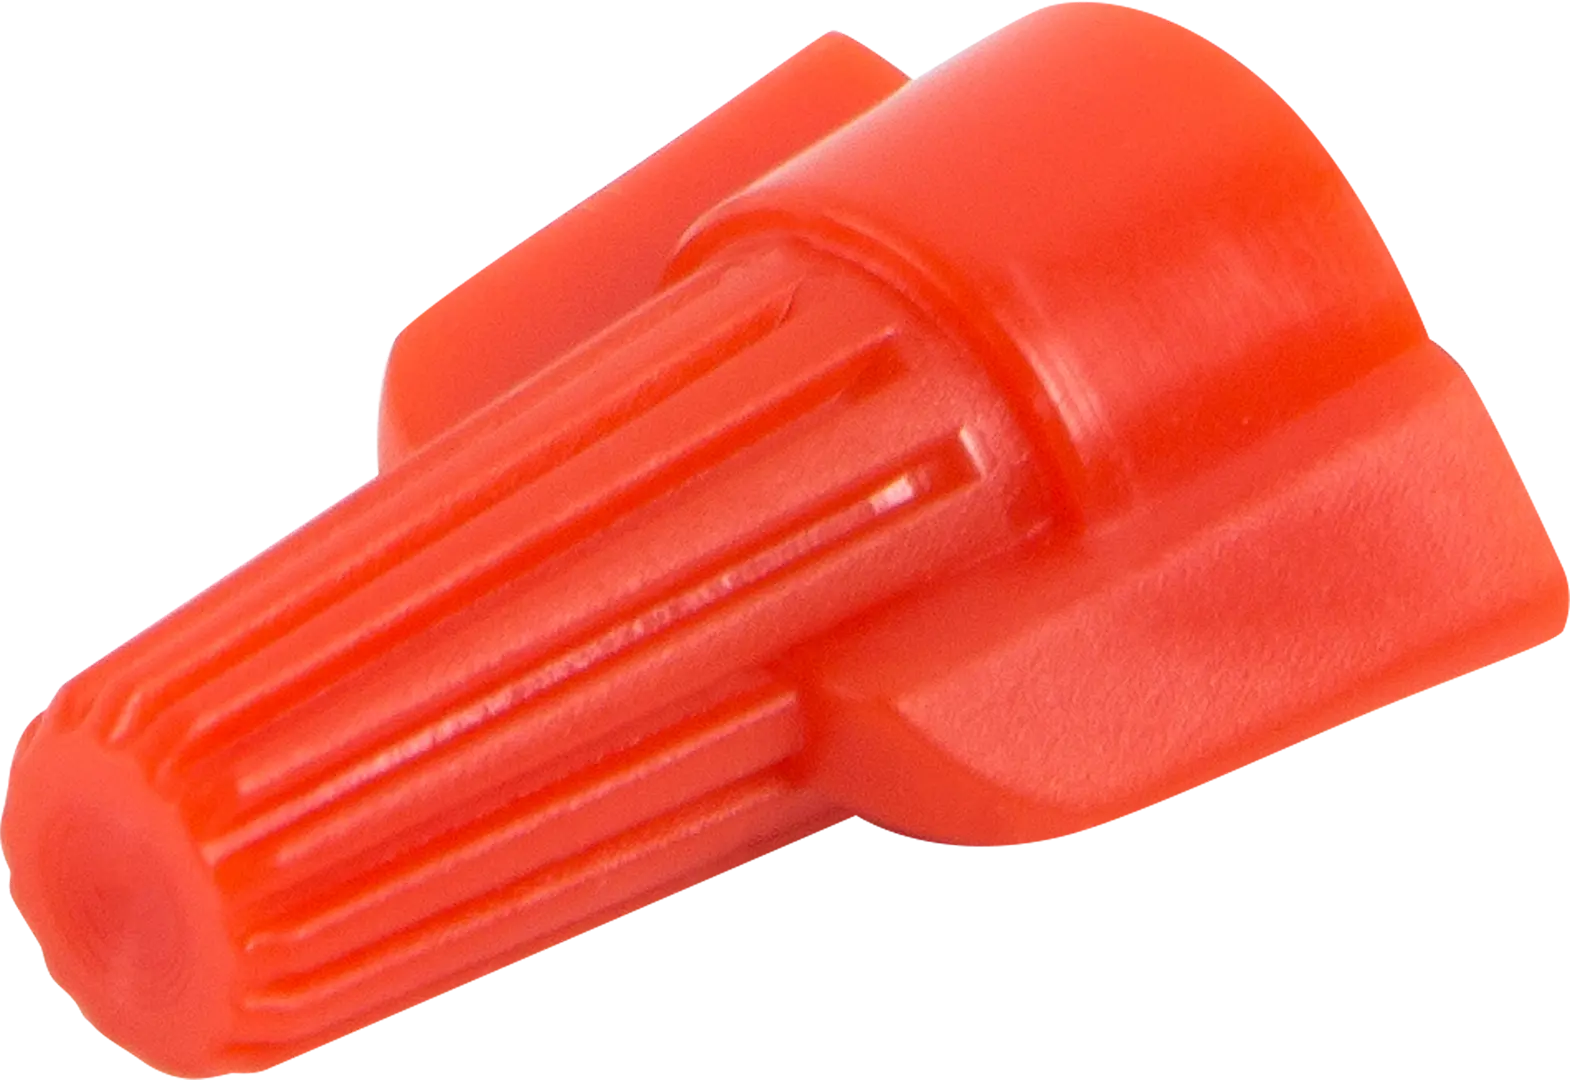 Соединительный изолирующий зажим Duwi СИЗ-Л-4 7-20 мм цвет красный 10 шт. соединительный изолирующий зажим duwi сиз 3 2 5 6 мм цвет оранжевый 10 шт